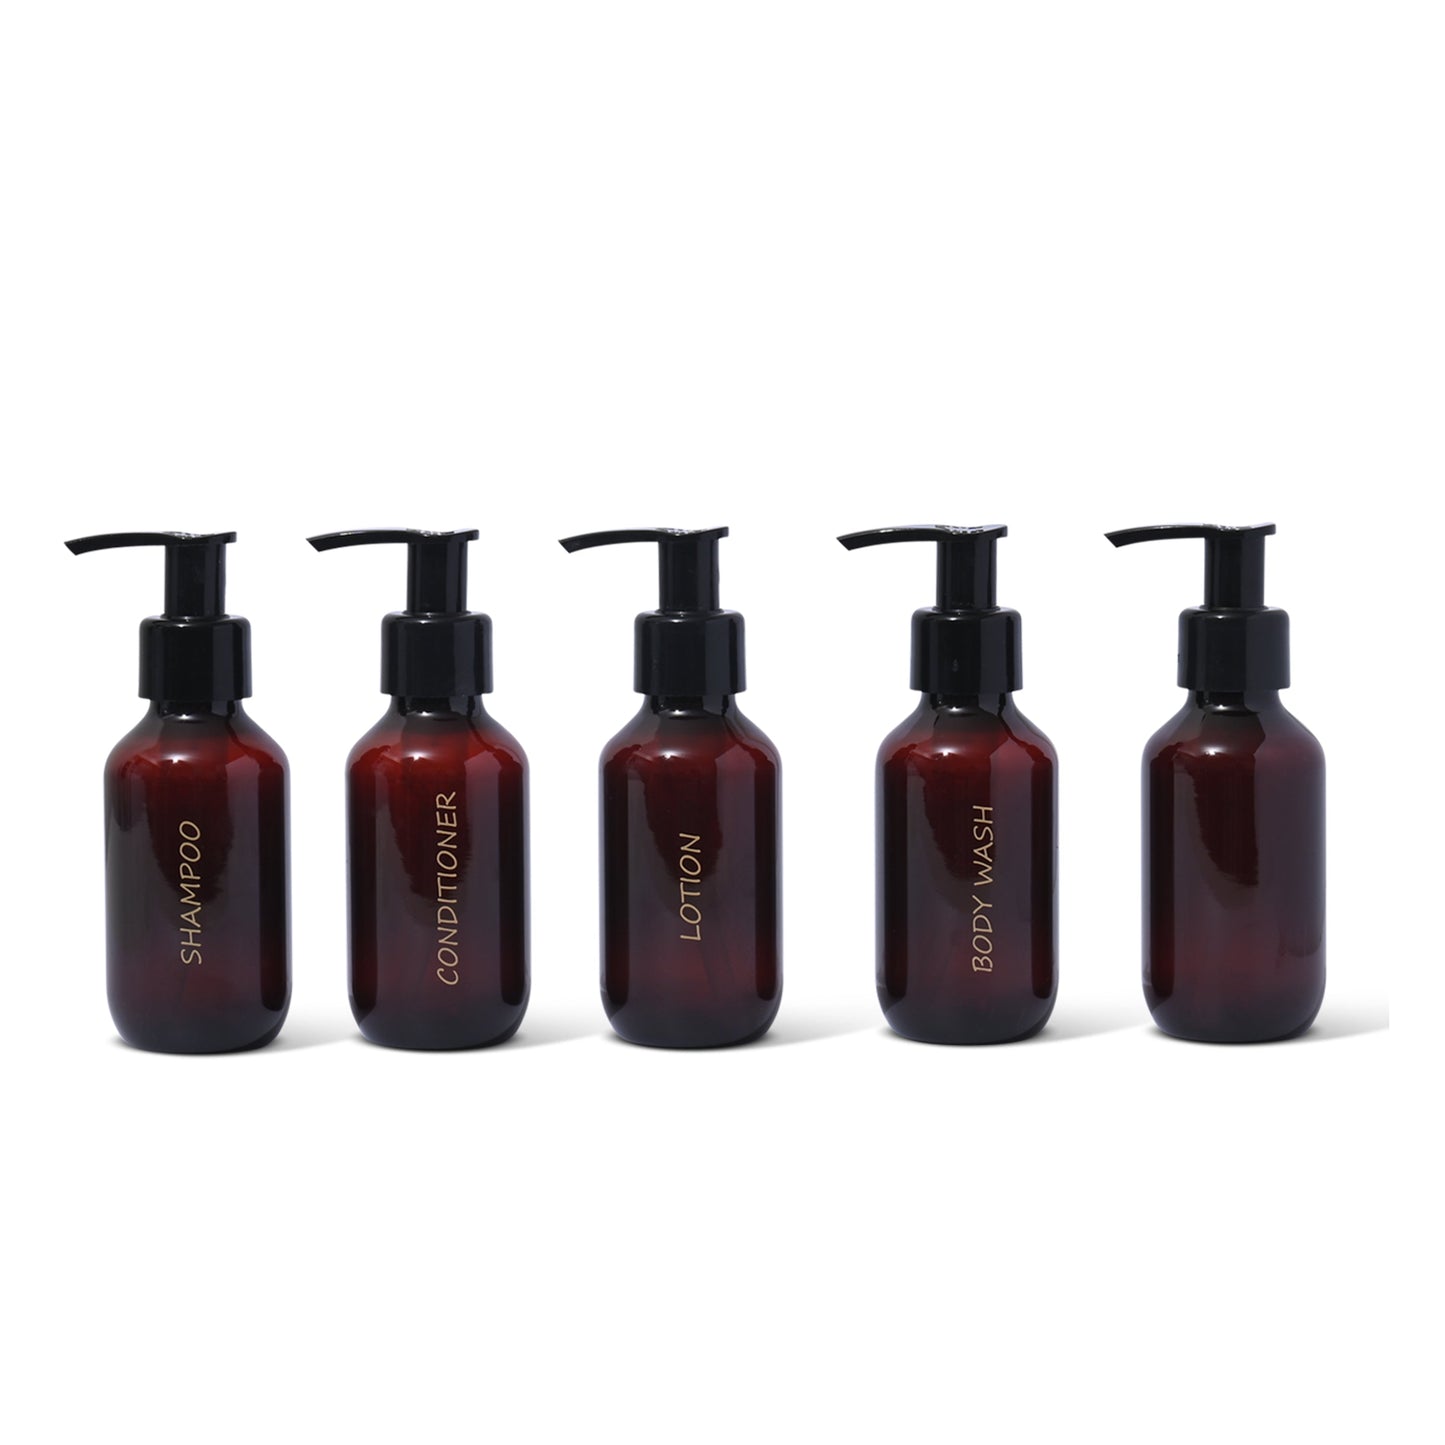 3 oz. Wholesale Printed Amber Plastic Travel Beauty Bottle Sets w Pumps - TSA-Compliant - Full Case (60 sets)